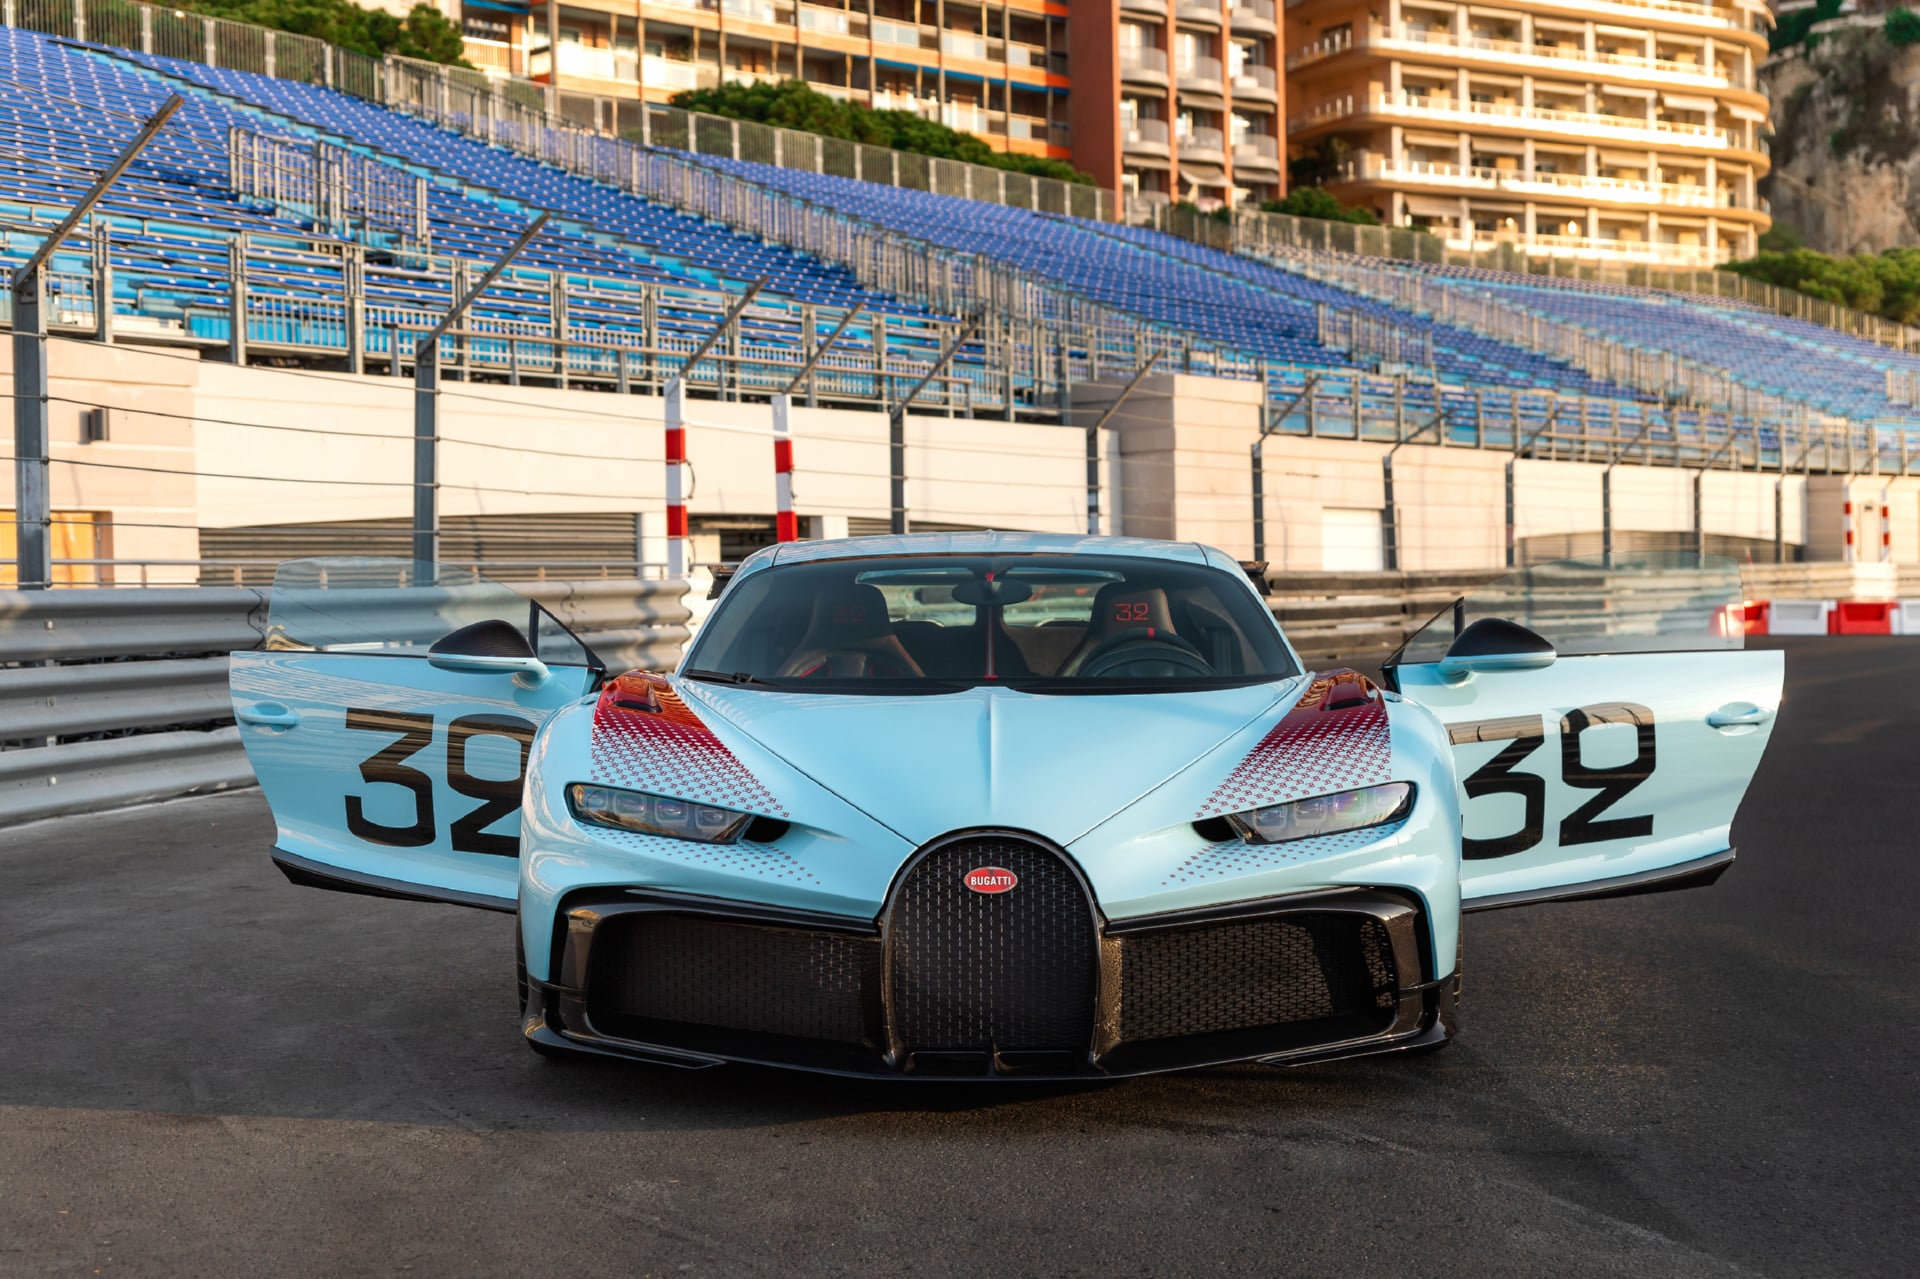 Bugatti Chiron Pur Sport Grand Prix at 1024 x 1024 iPad size wallpapers HD quality